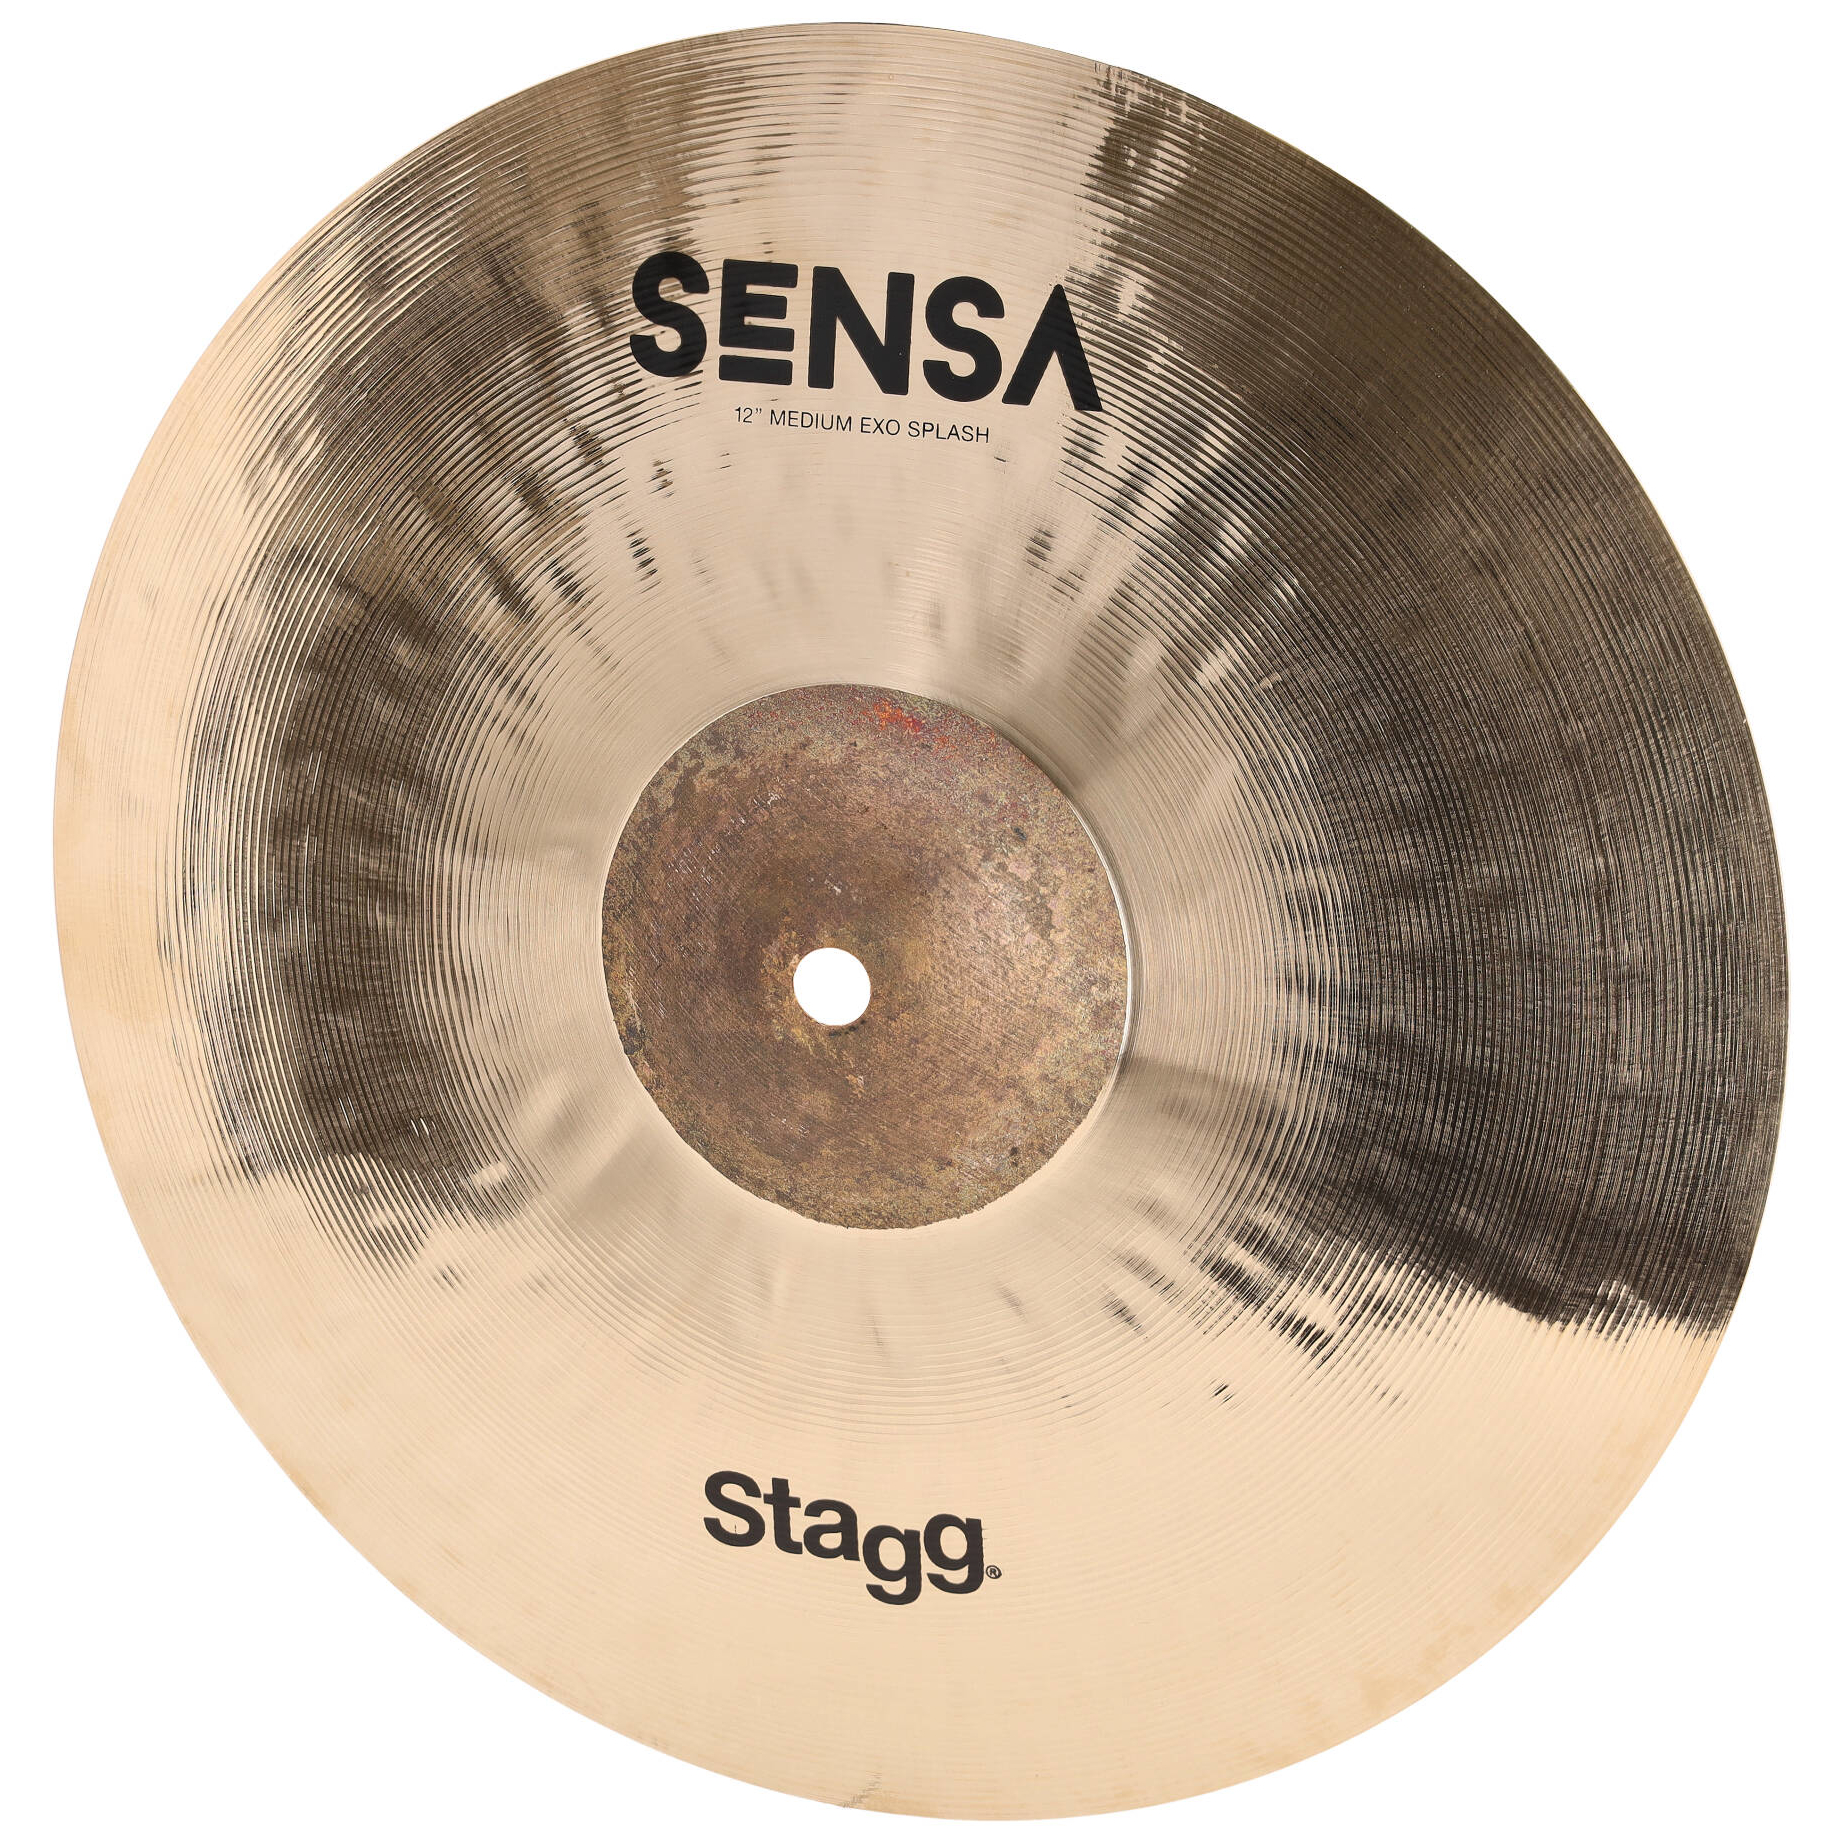 Stagg Sensa Exo Splash - 12 inch B-stock